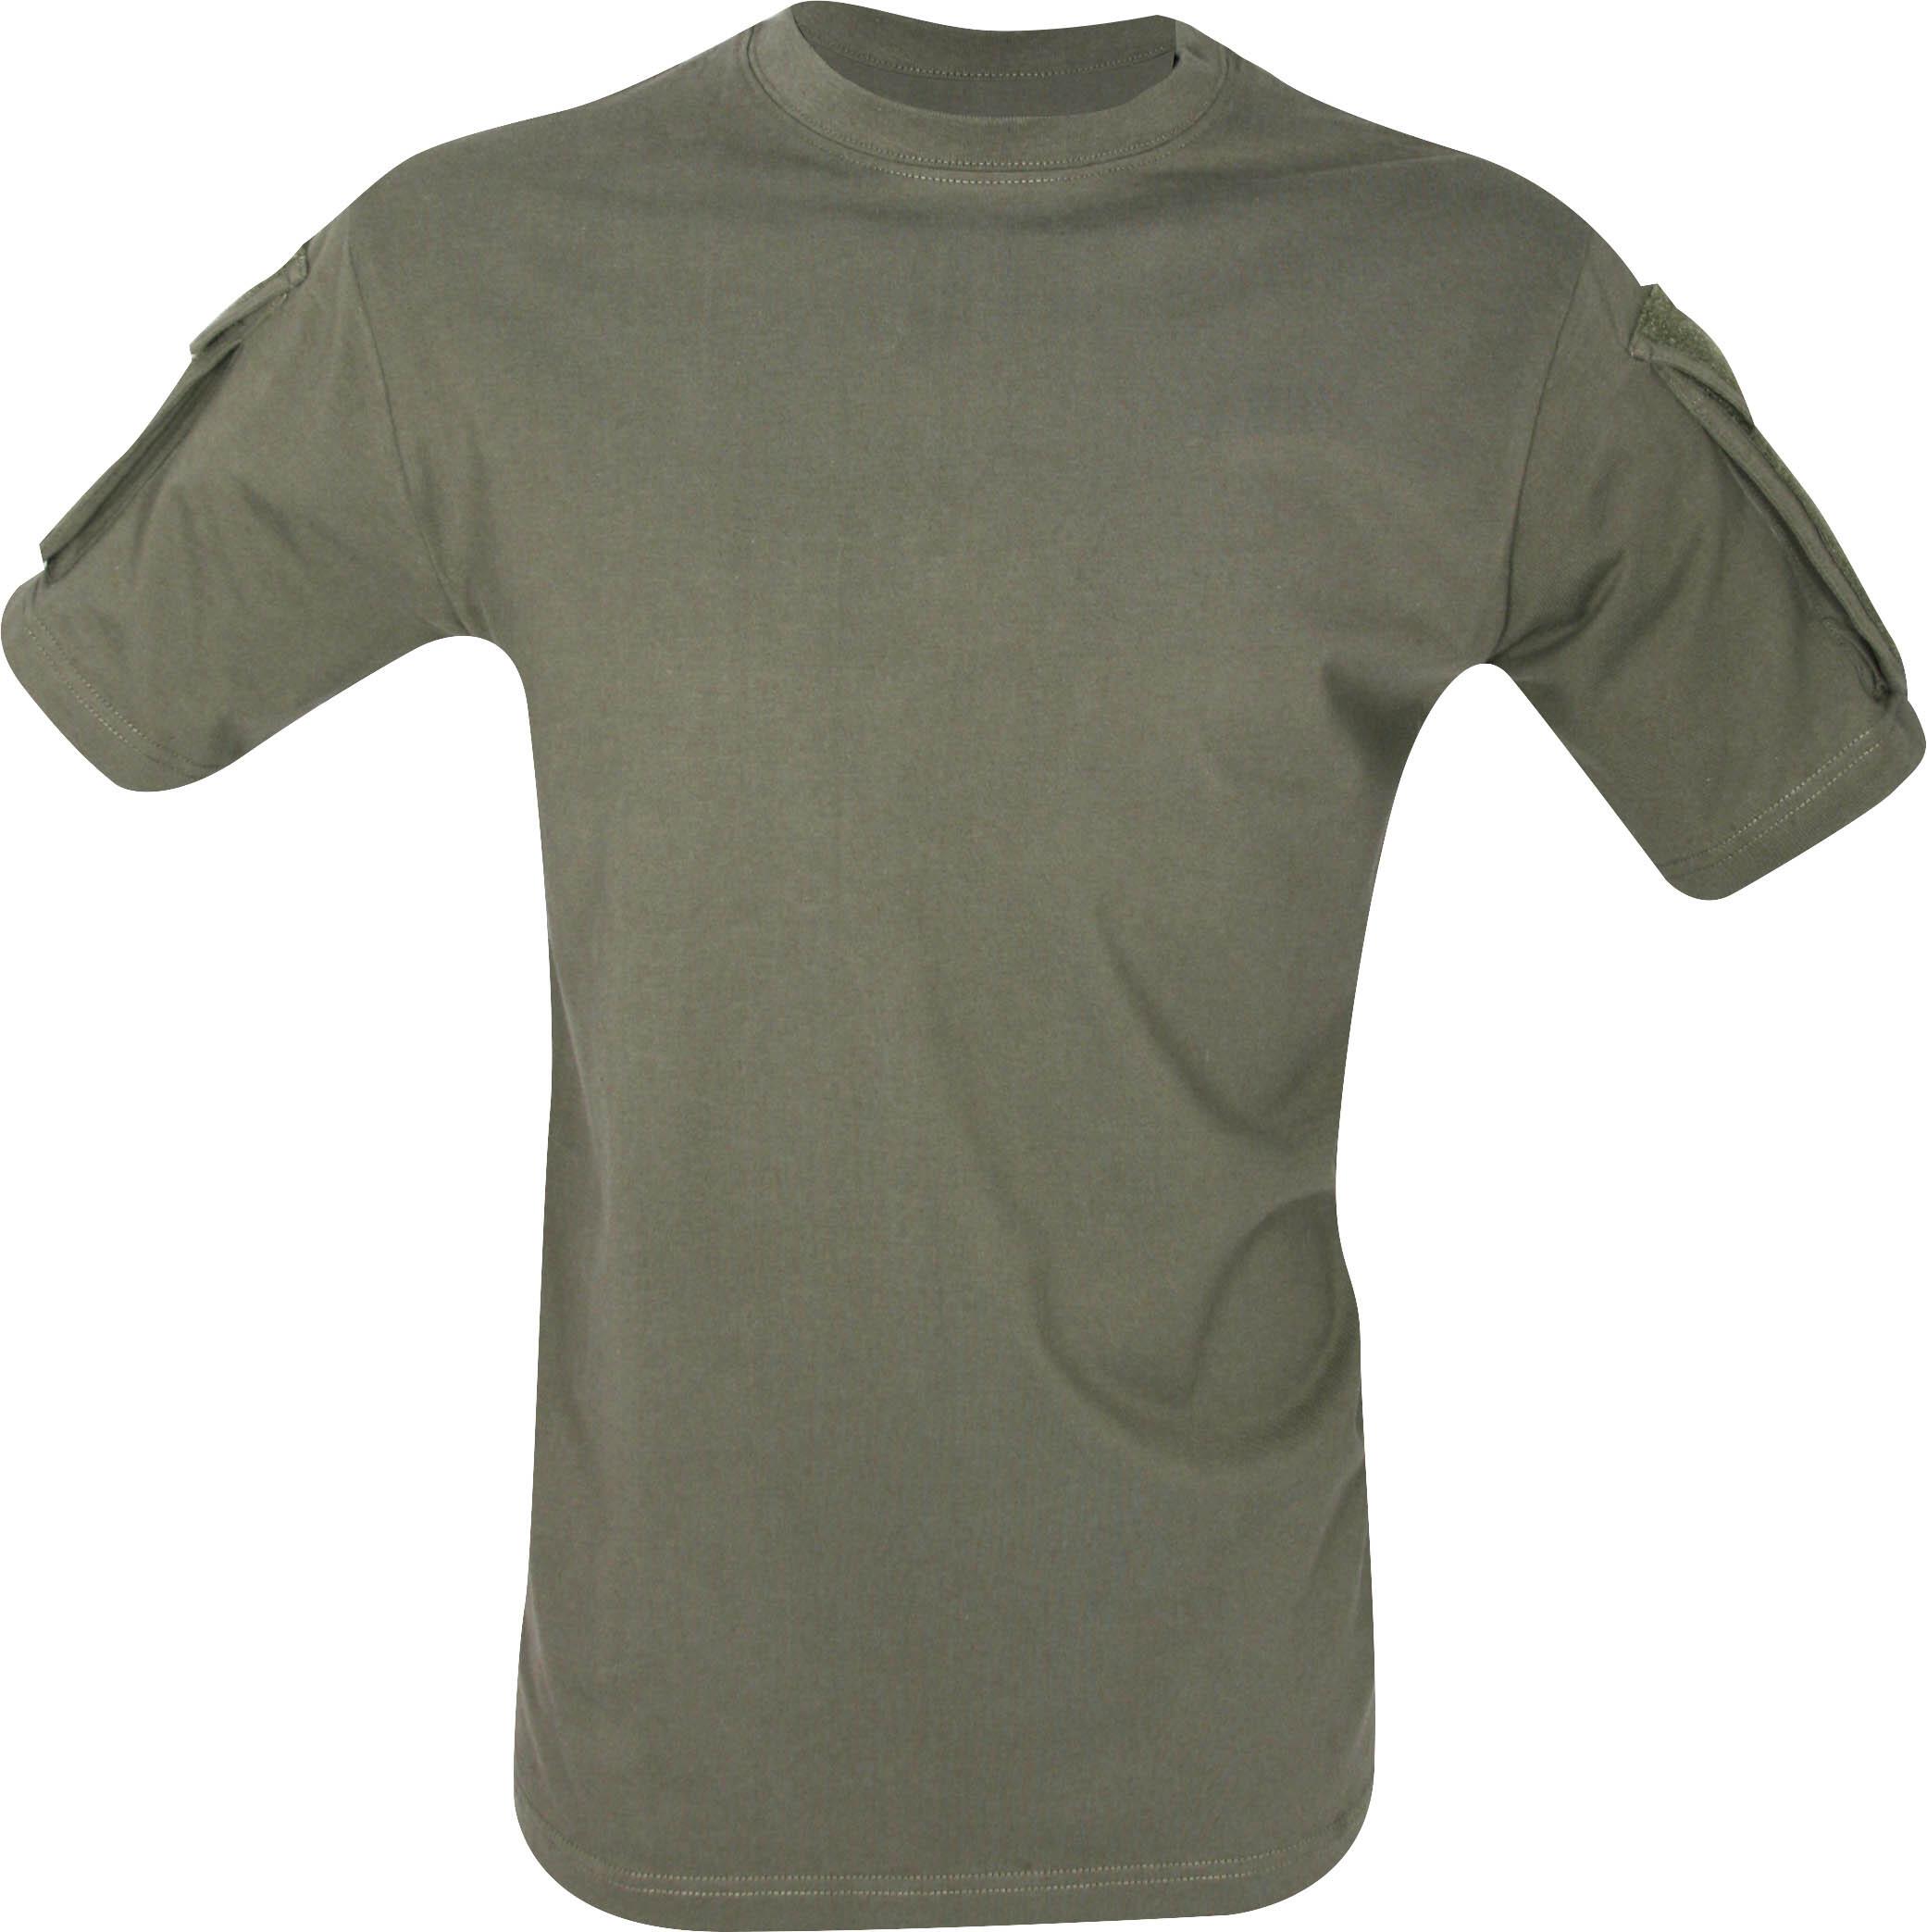 Viper Tactical T-Shirt - Green